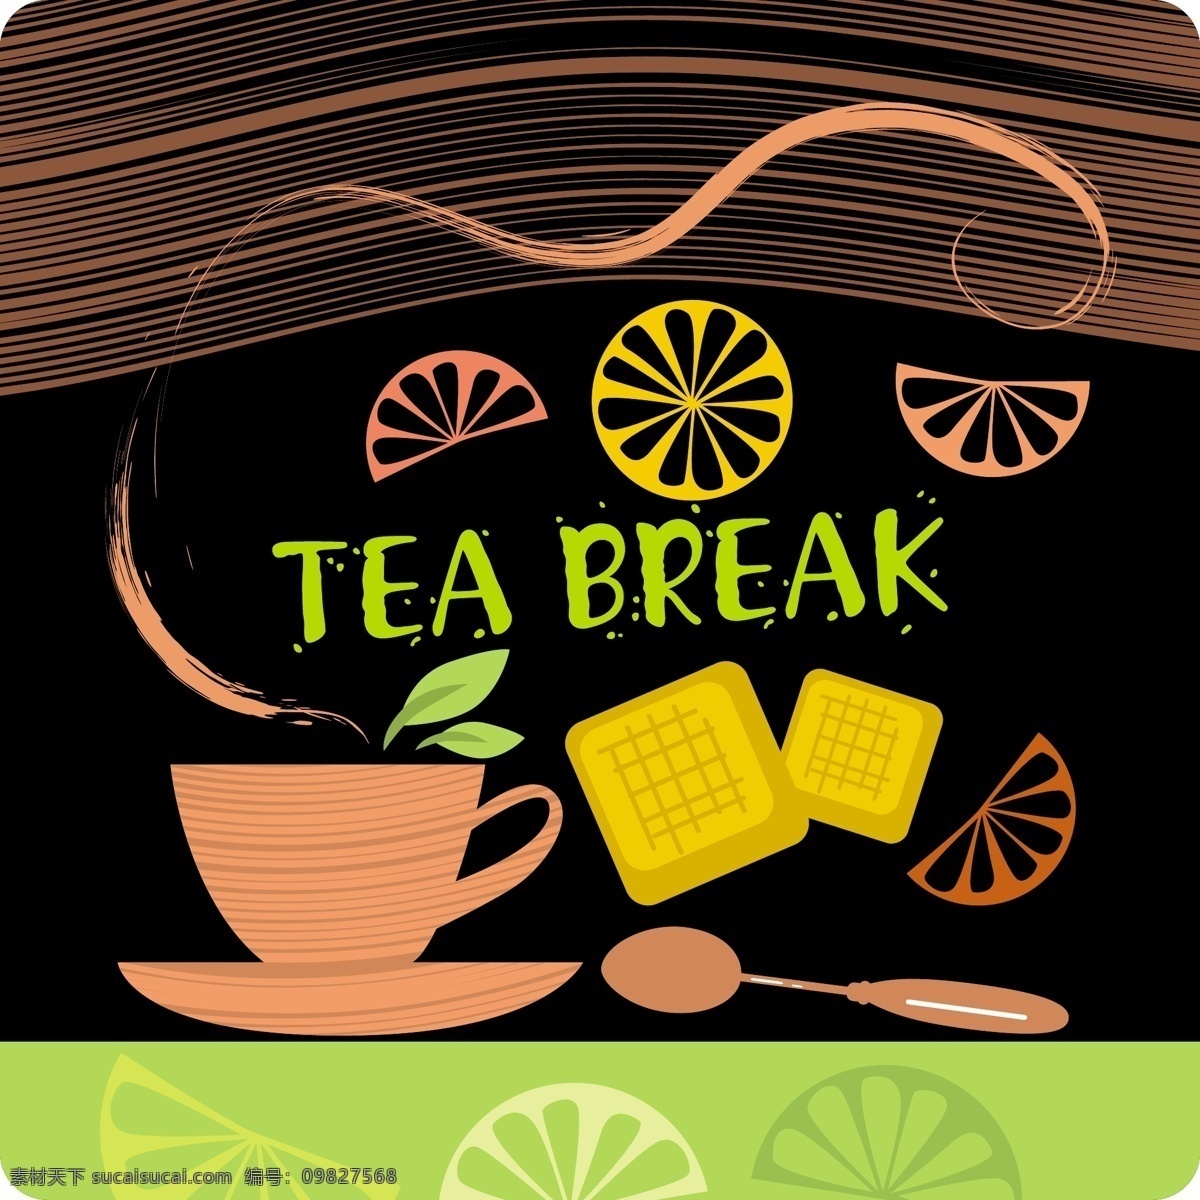 款 饮品 海报 矢量 茶杯 橙子 勺子 设计素材 矢量海报 线条 其他海报设计